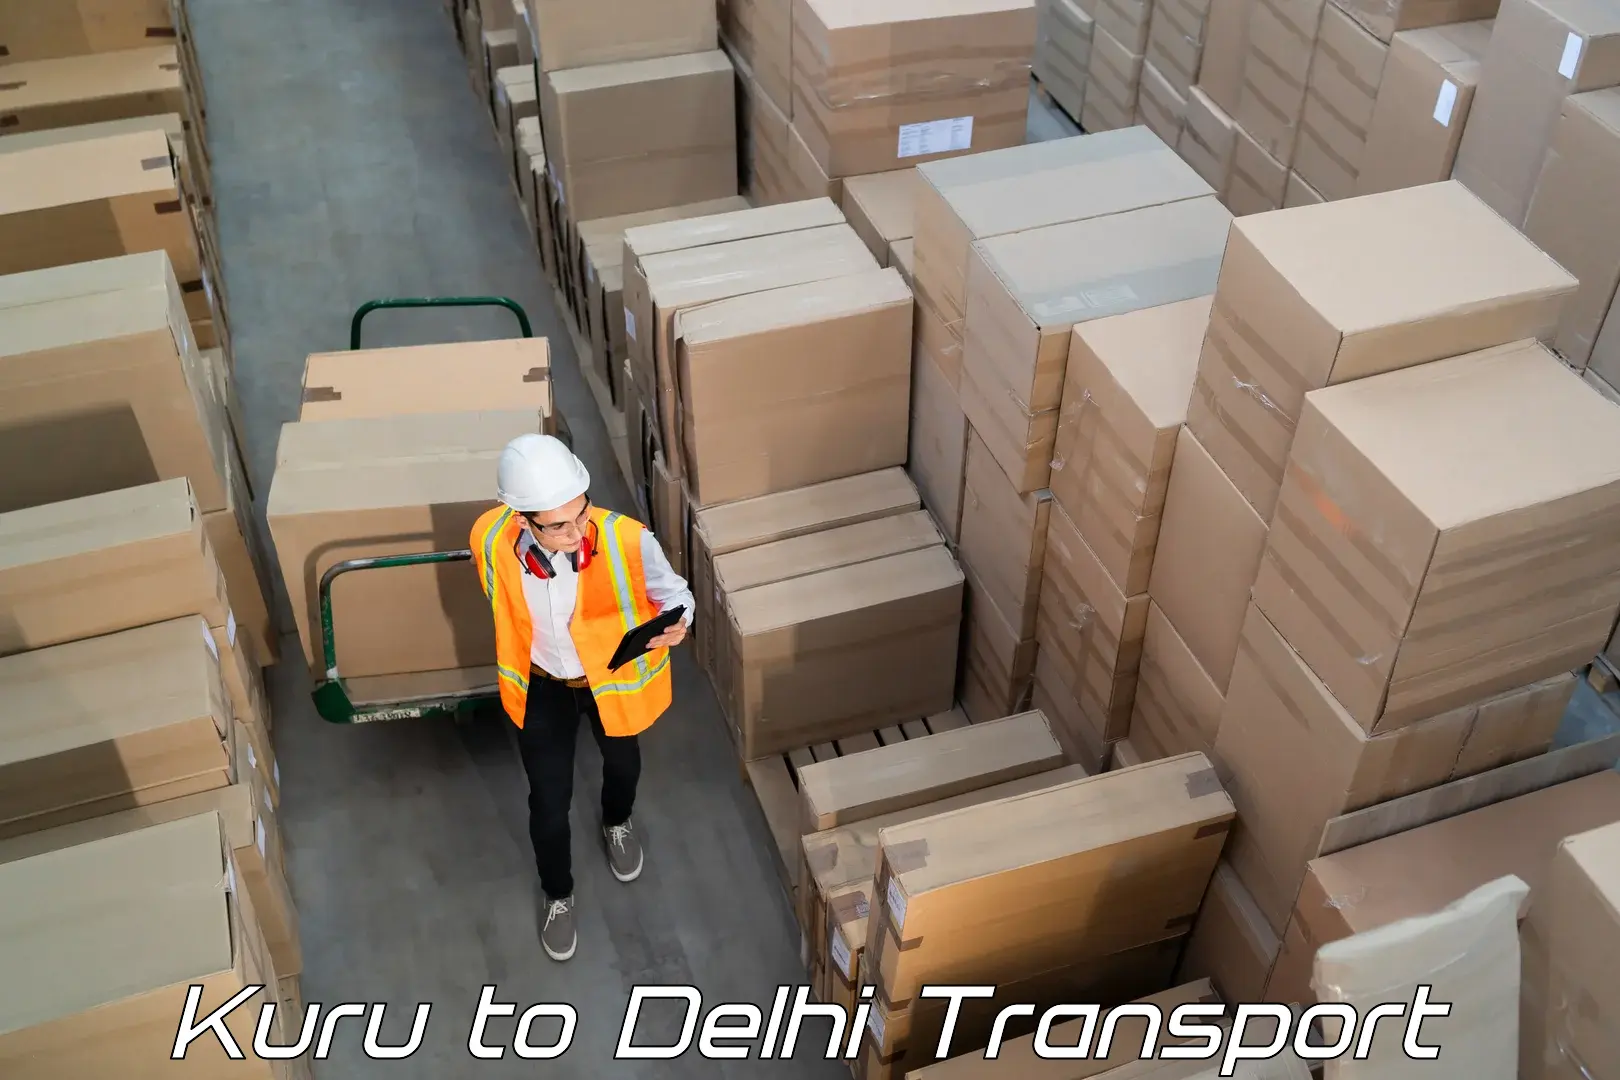 Container transport service Kuru to IIT Delhi